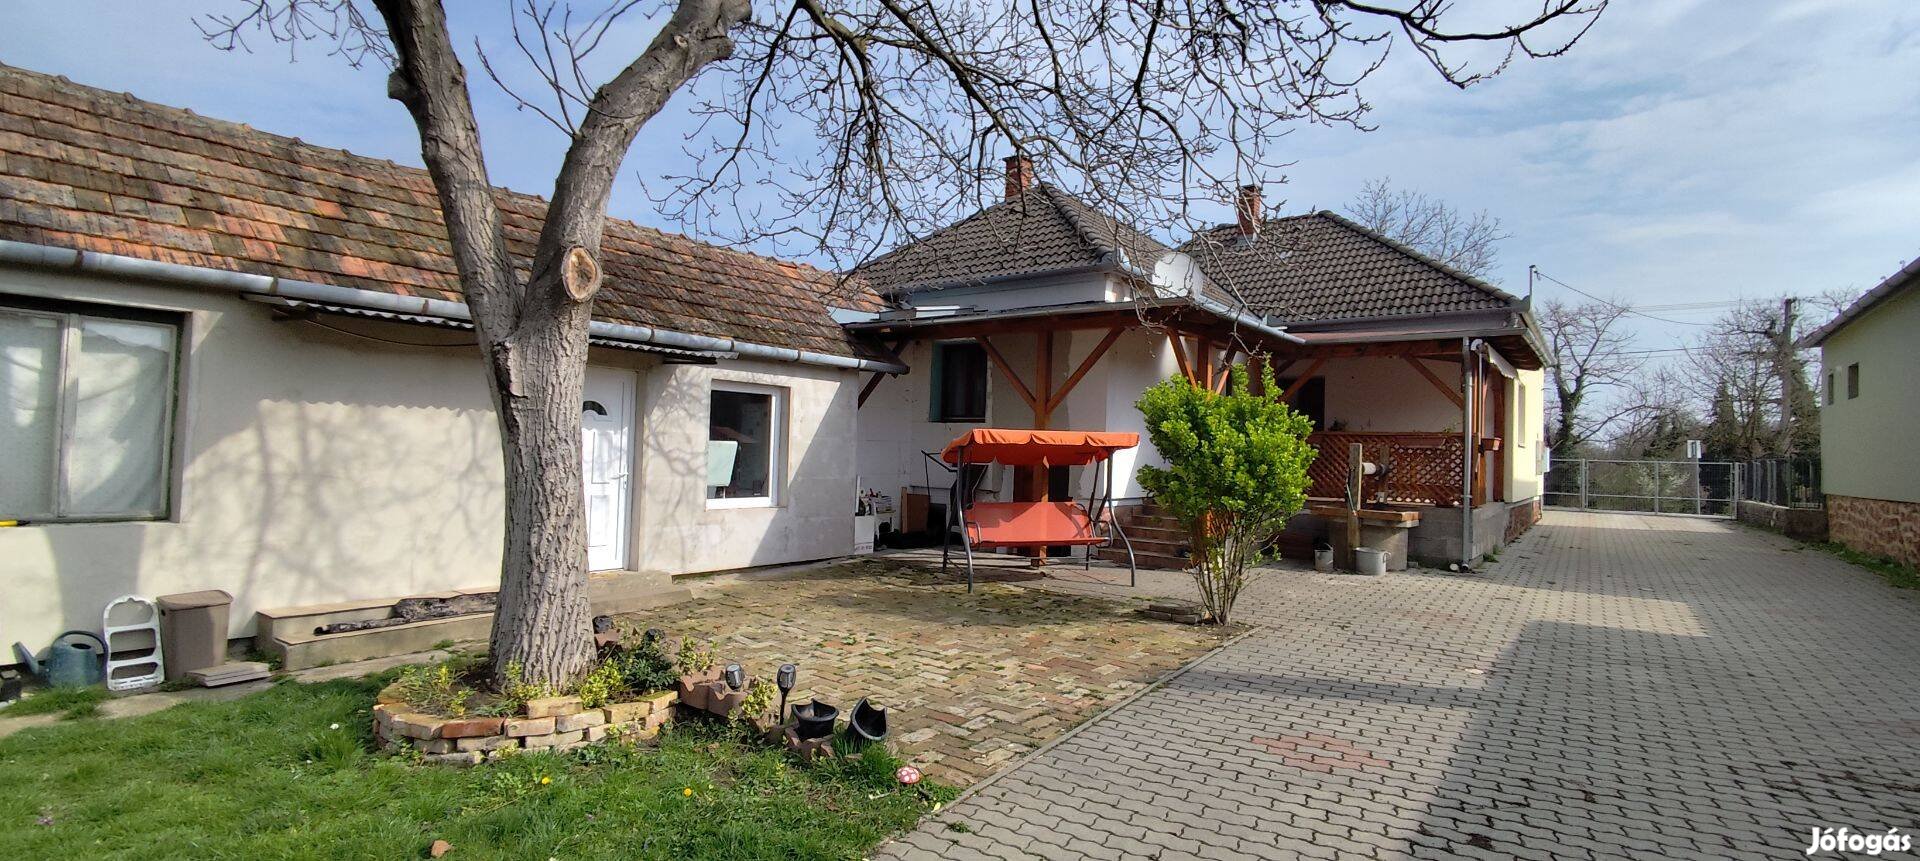 Eladó ház a Balatontól 25 km-re Zalaszentgróton